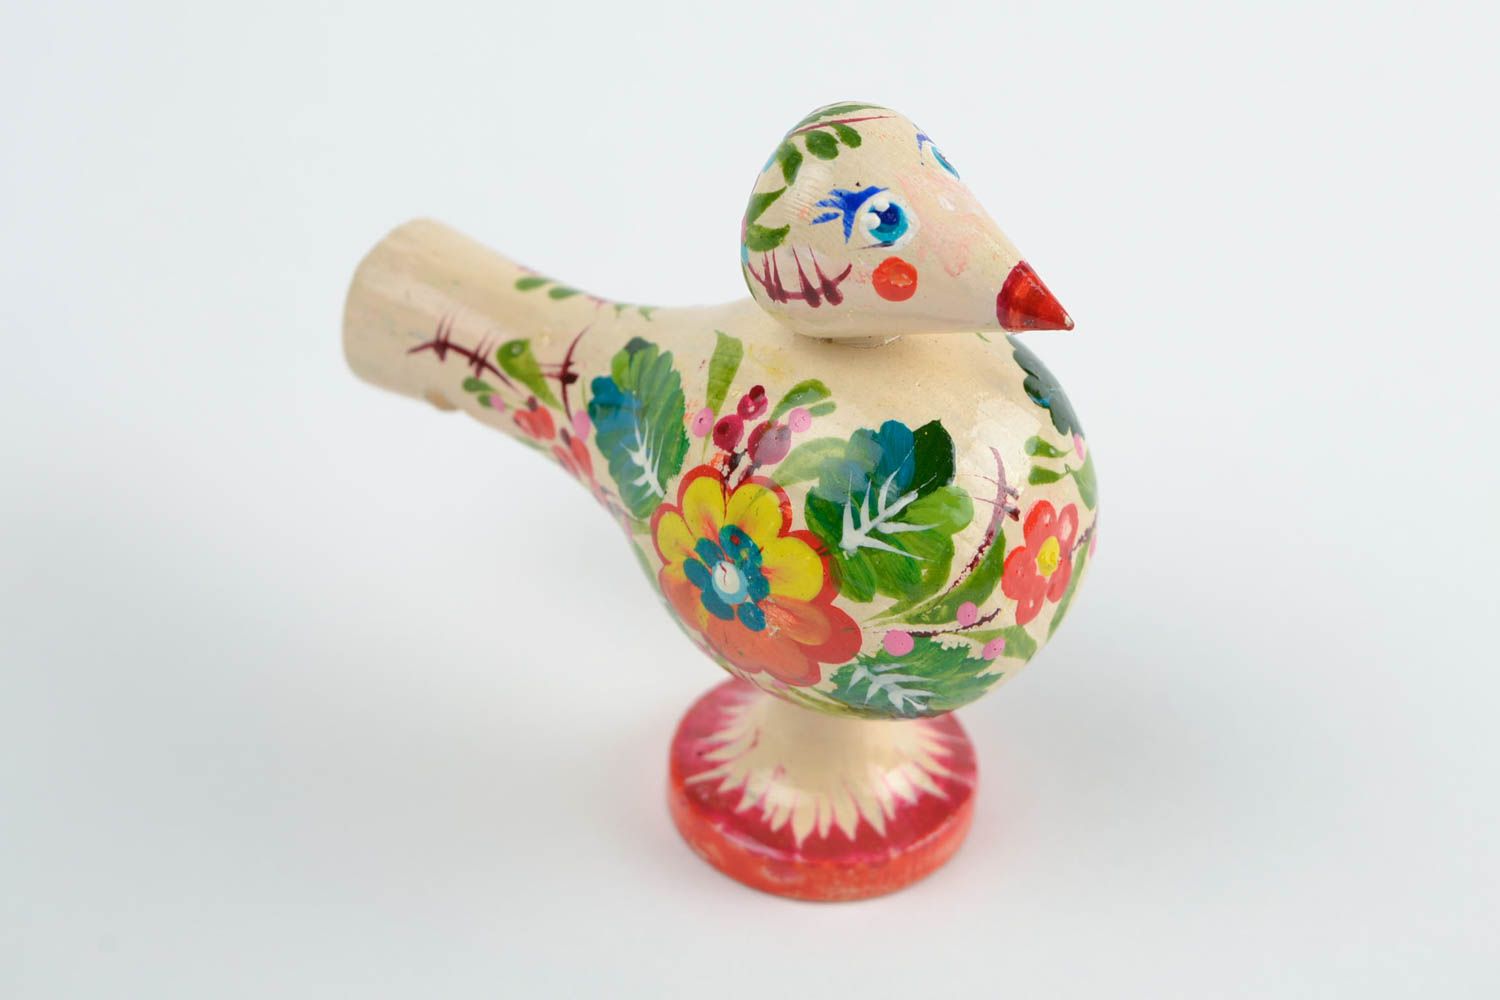 Wooden handmade whistle ethnic toy for children designer Petrikivka style gift photo 3